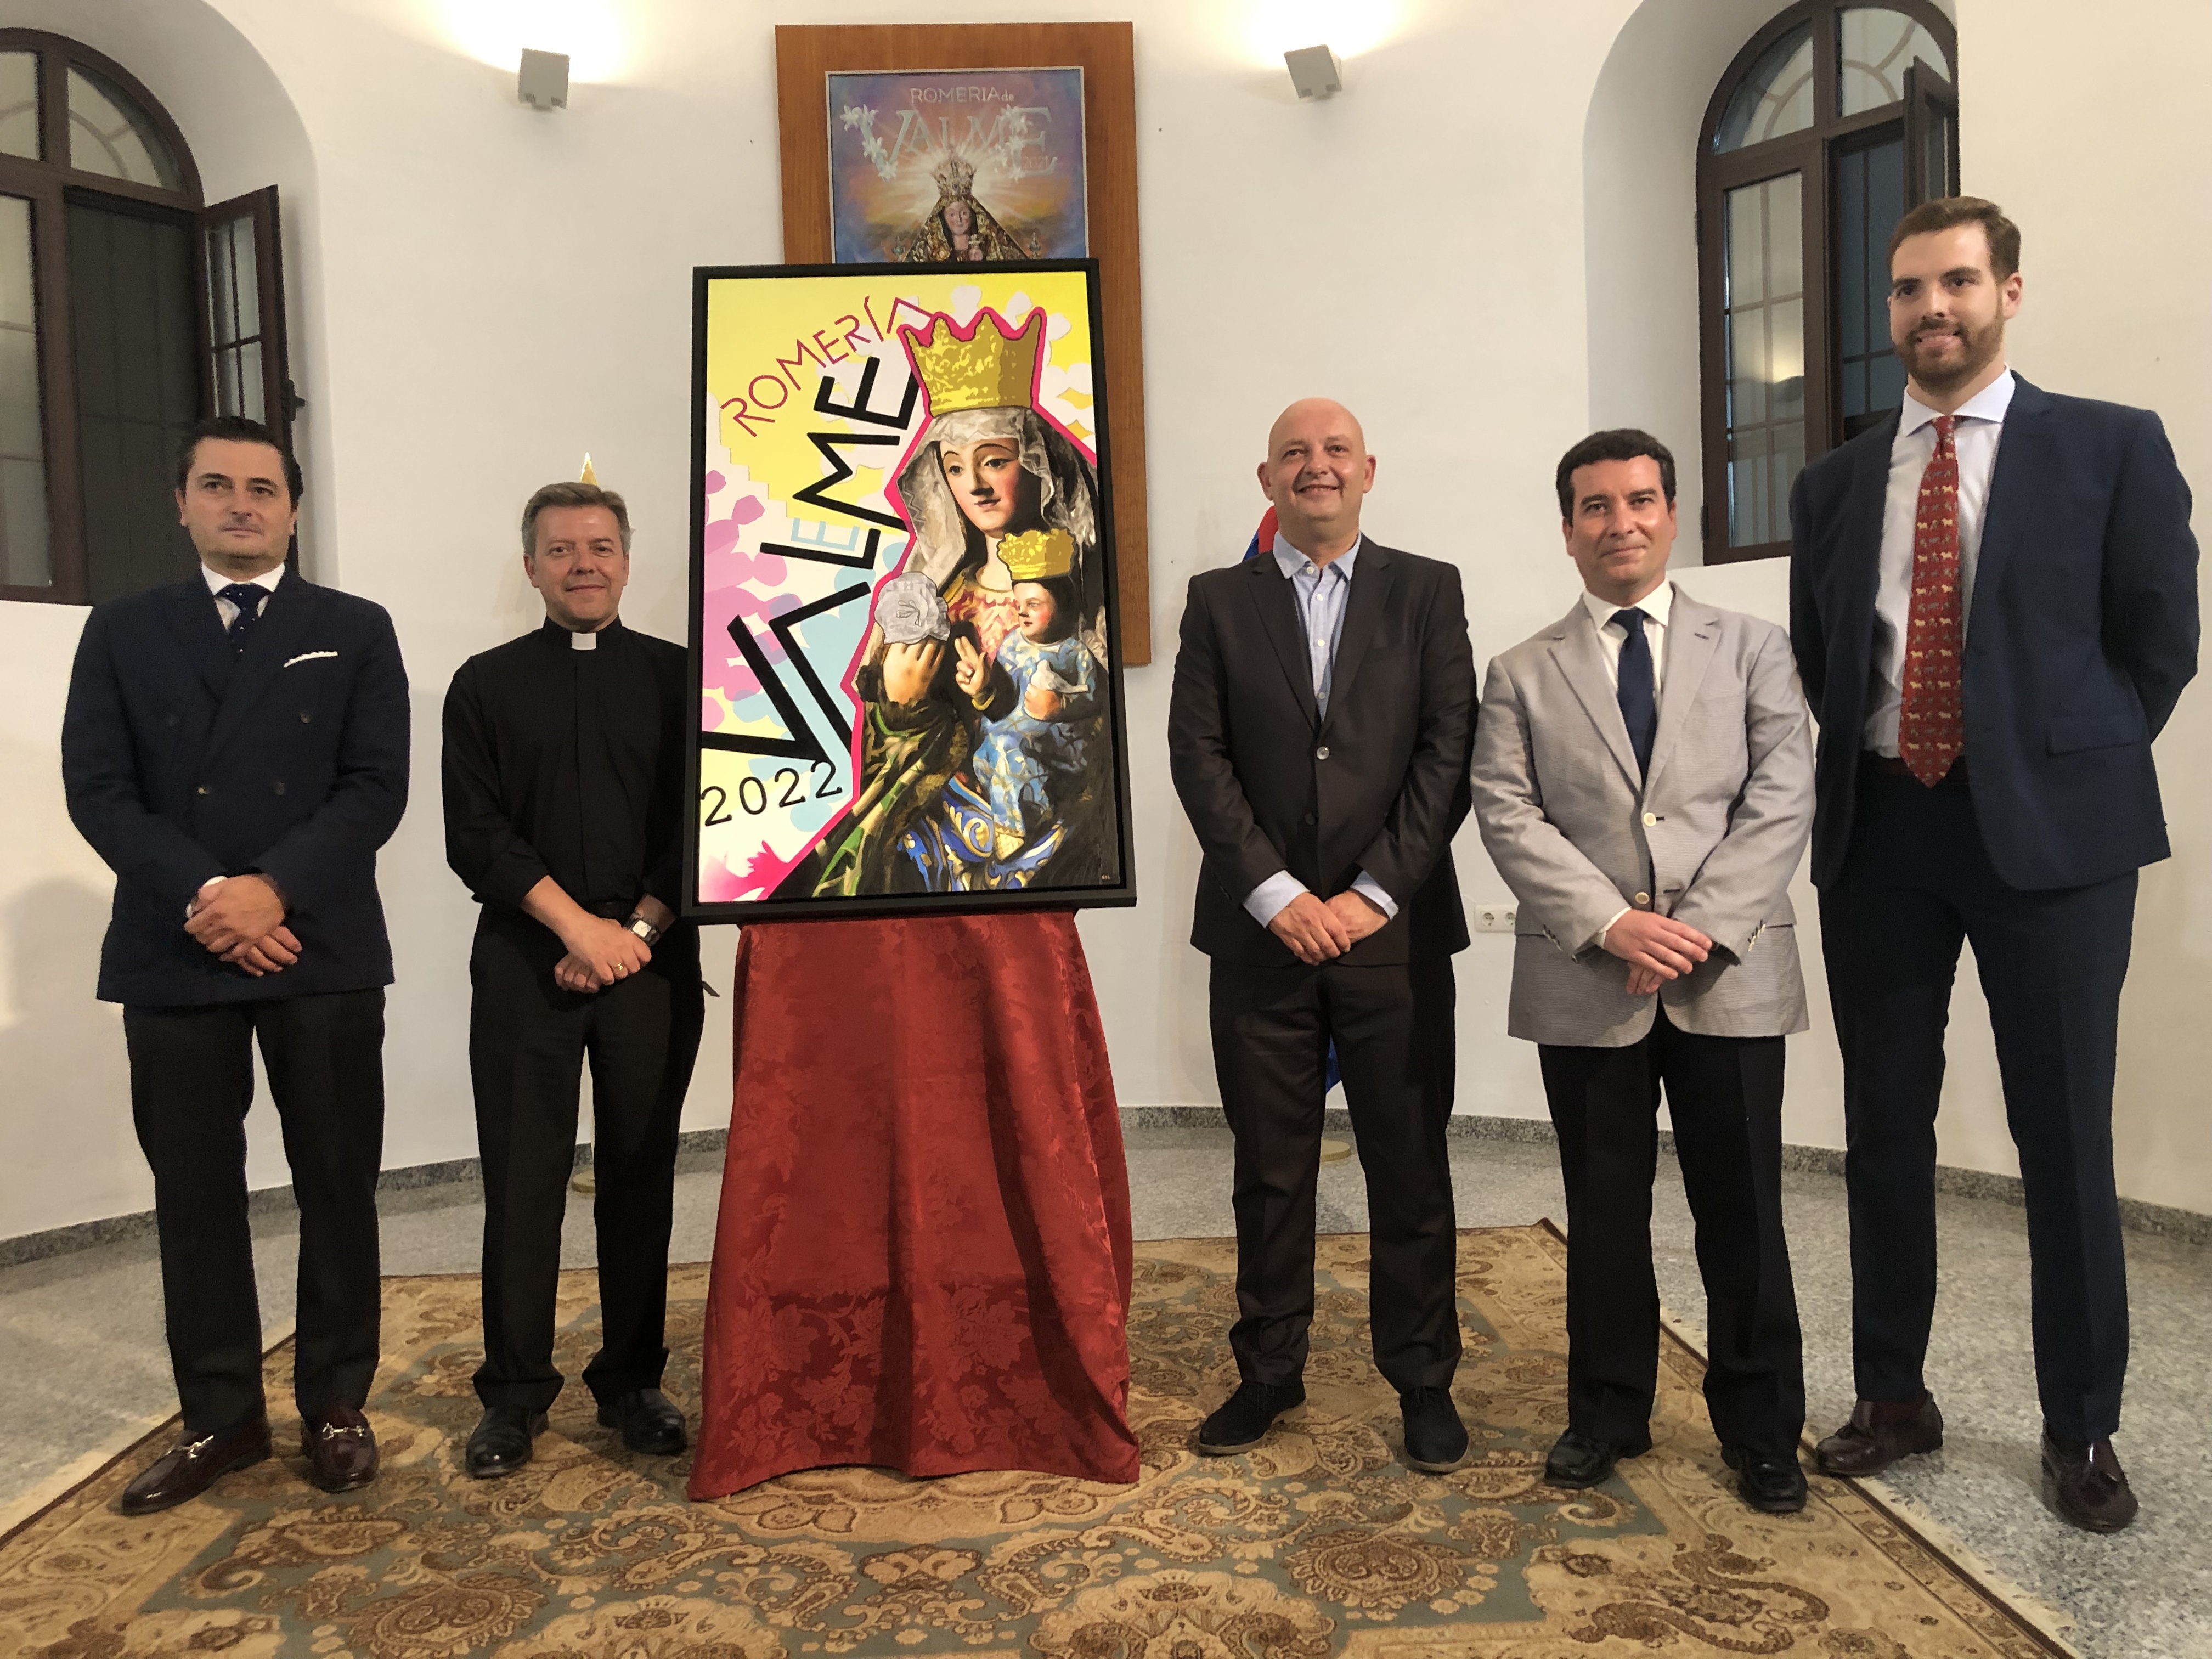 El artista sevillano Ricardo Gil aúna tradición y vanguardia en su colorido cartel anunciador de la Romería de Valme de 2022